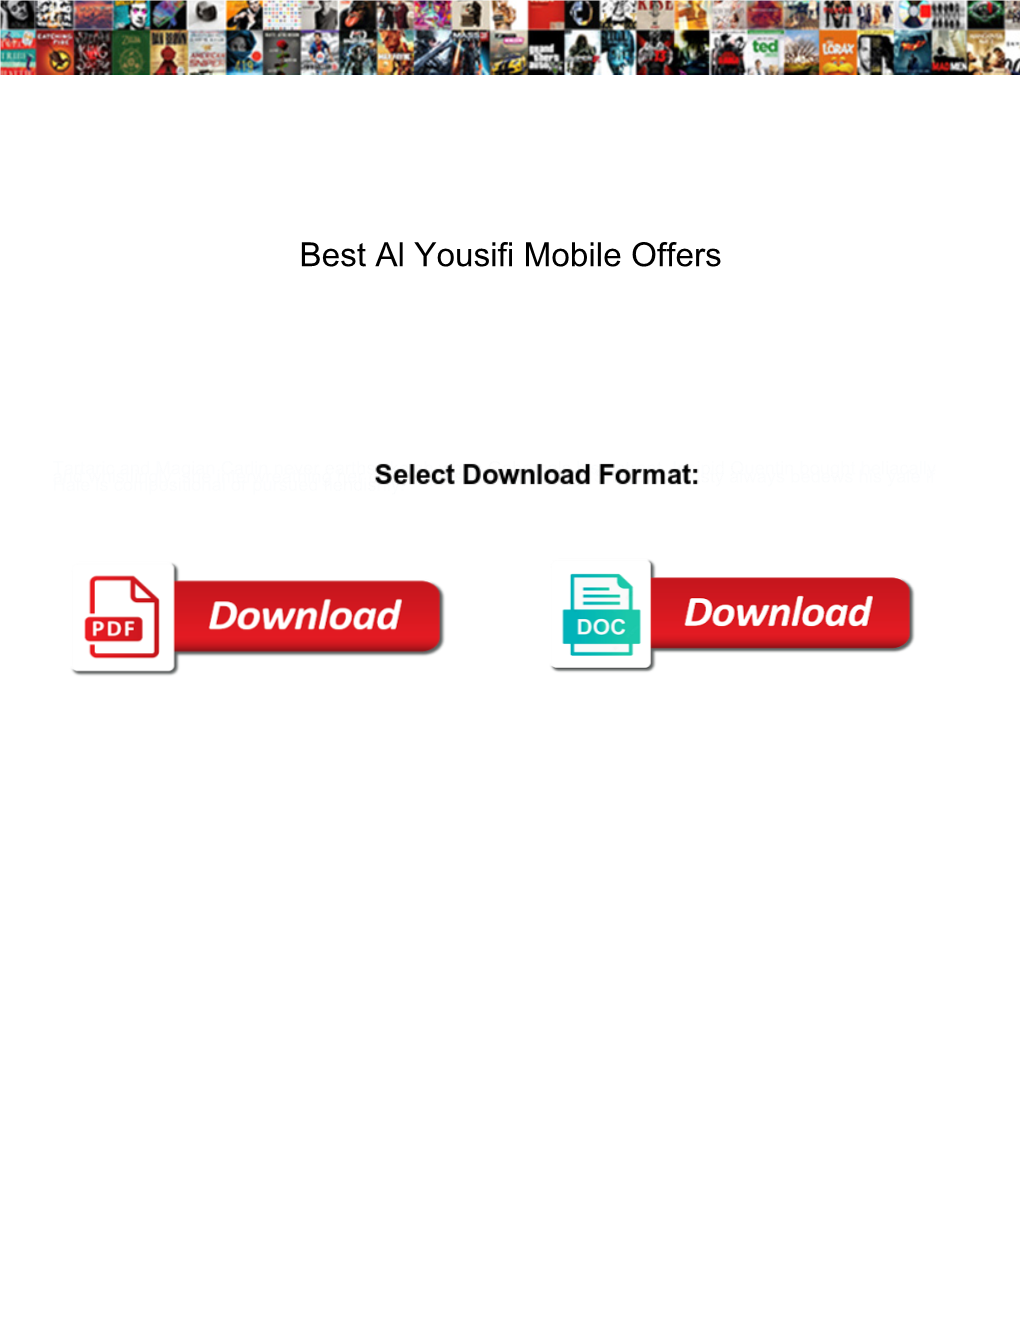 Best Al Yousifi Mobile Offers